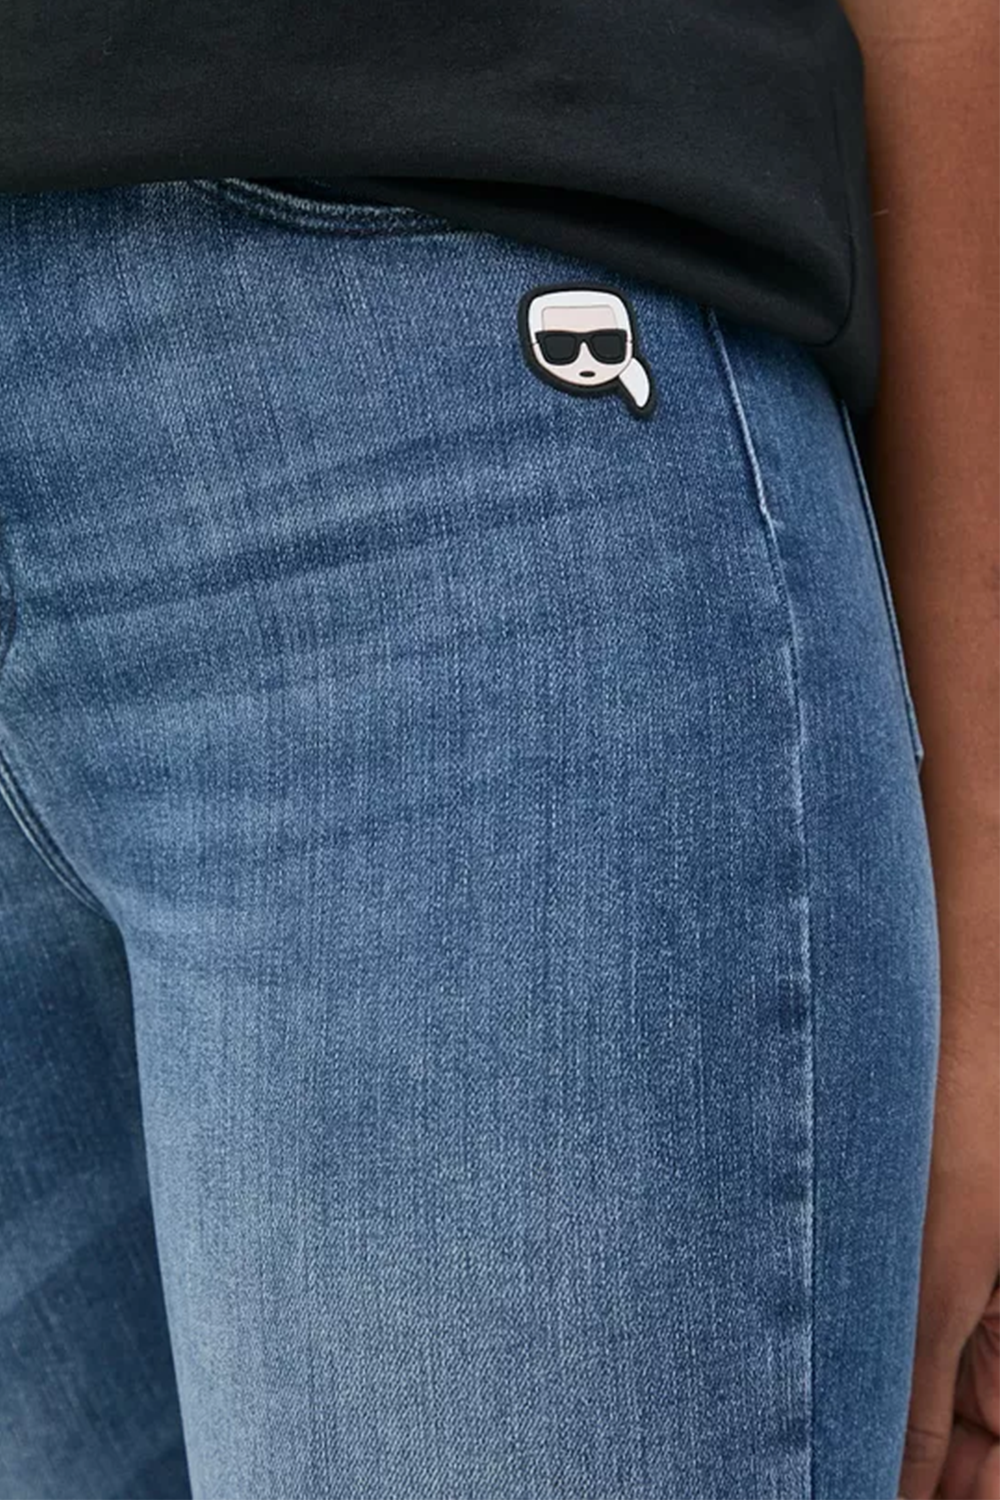 מכנסי גינס לנשים בצבע כחול KARL LAGERFELD Vendome online | ונדום .